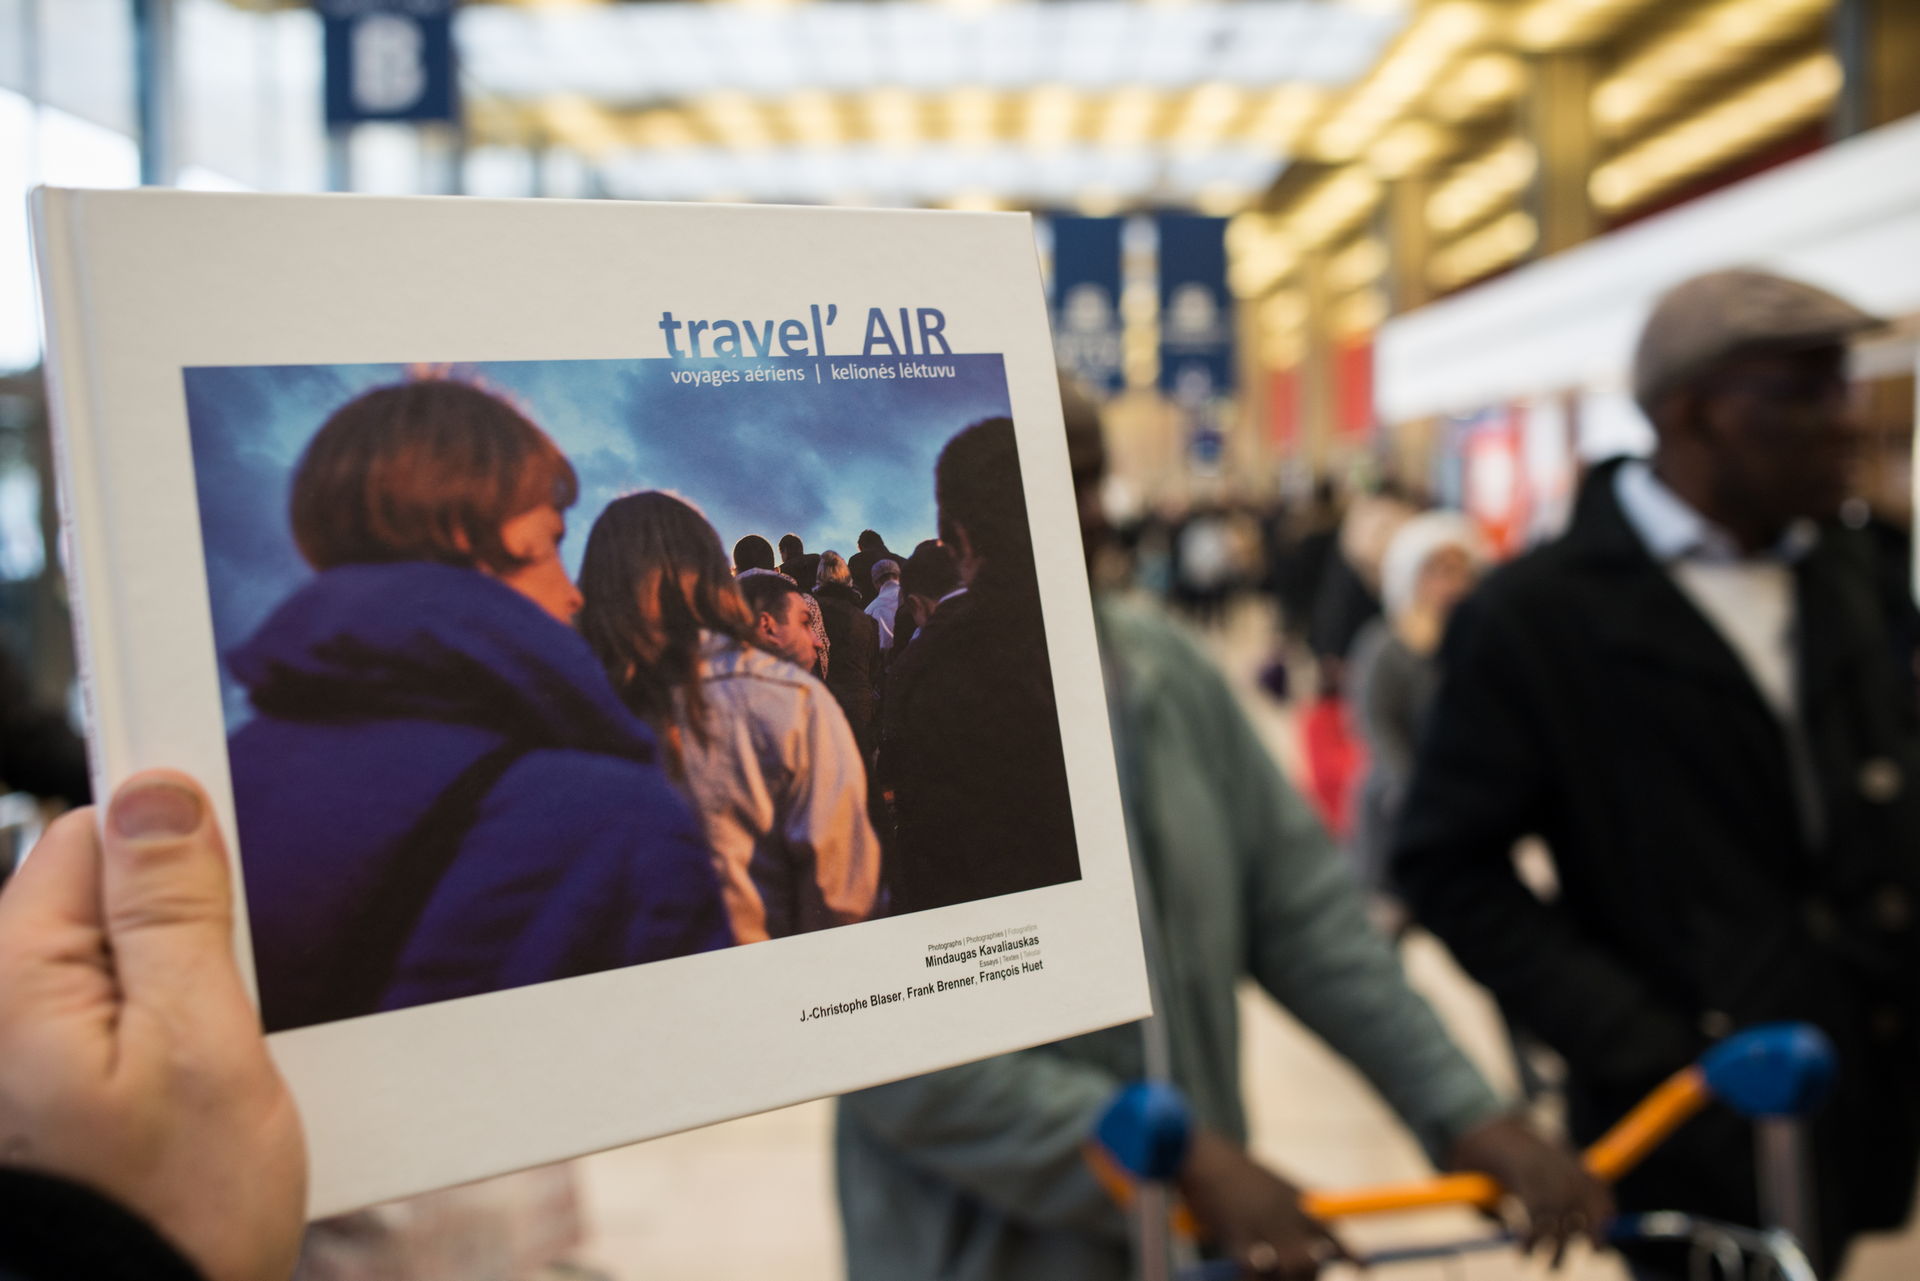 travel'AIR book at an airport terminal